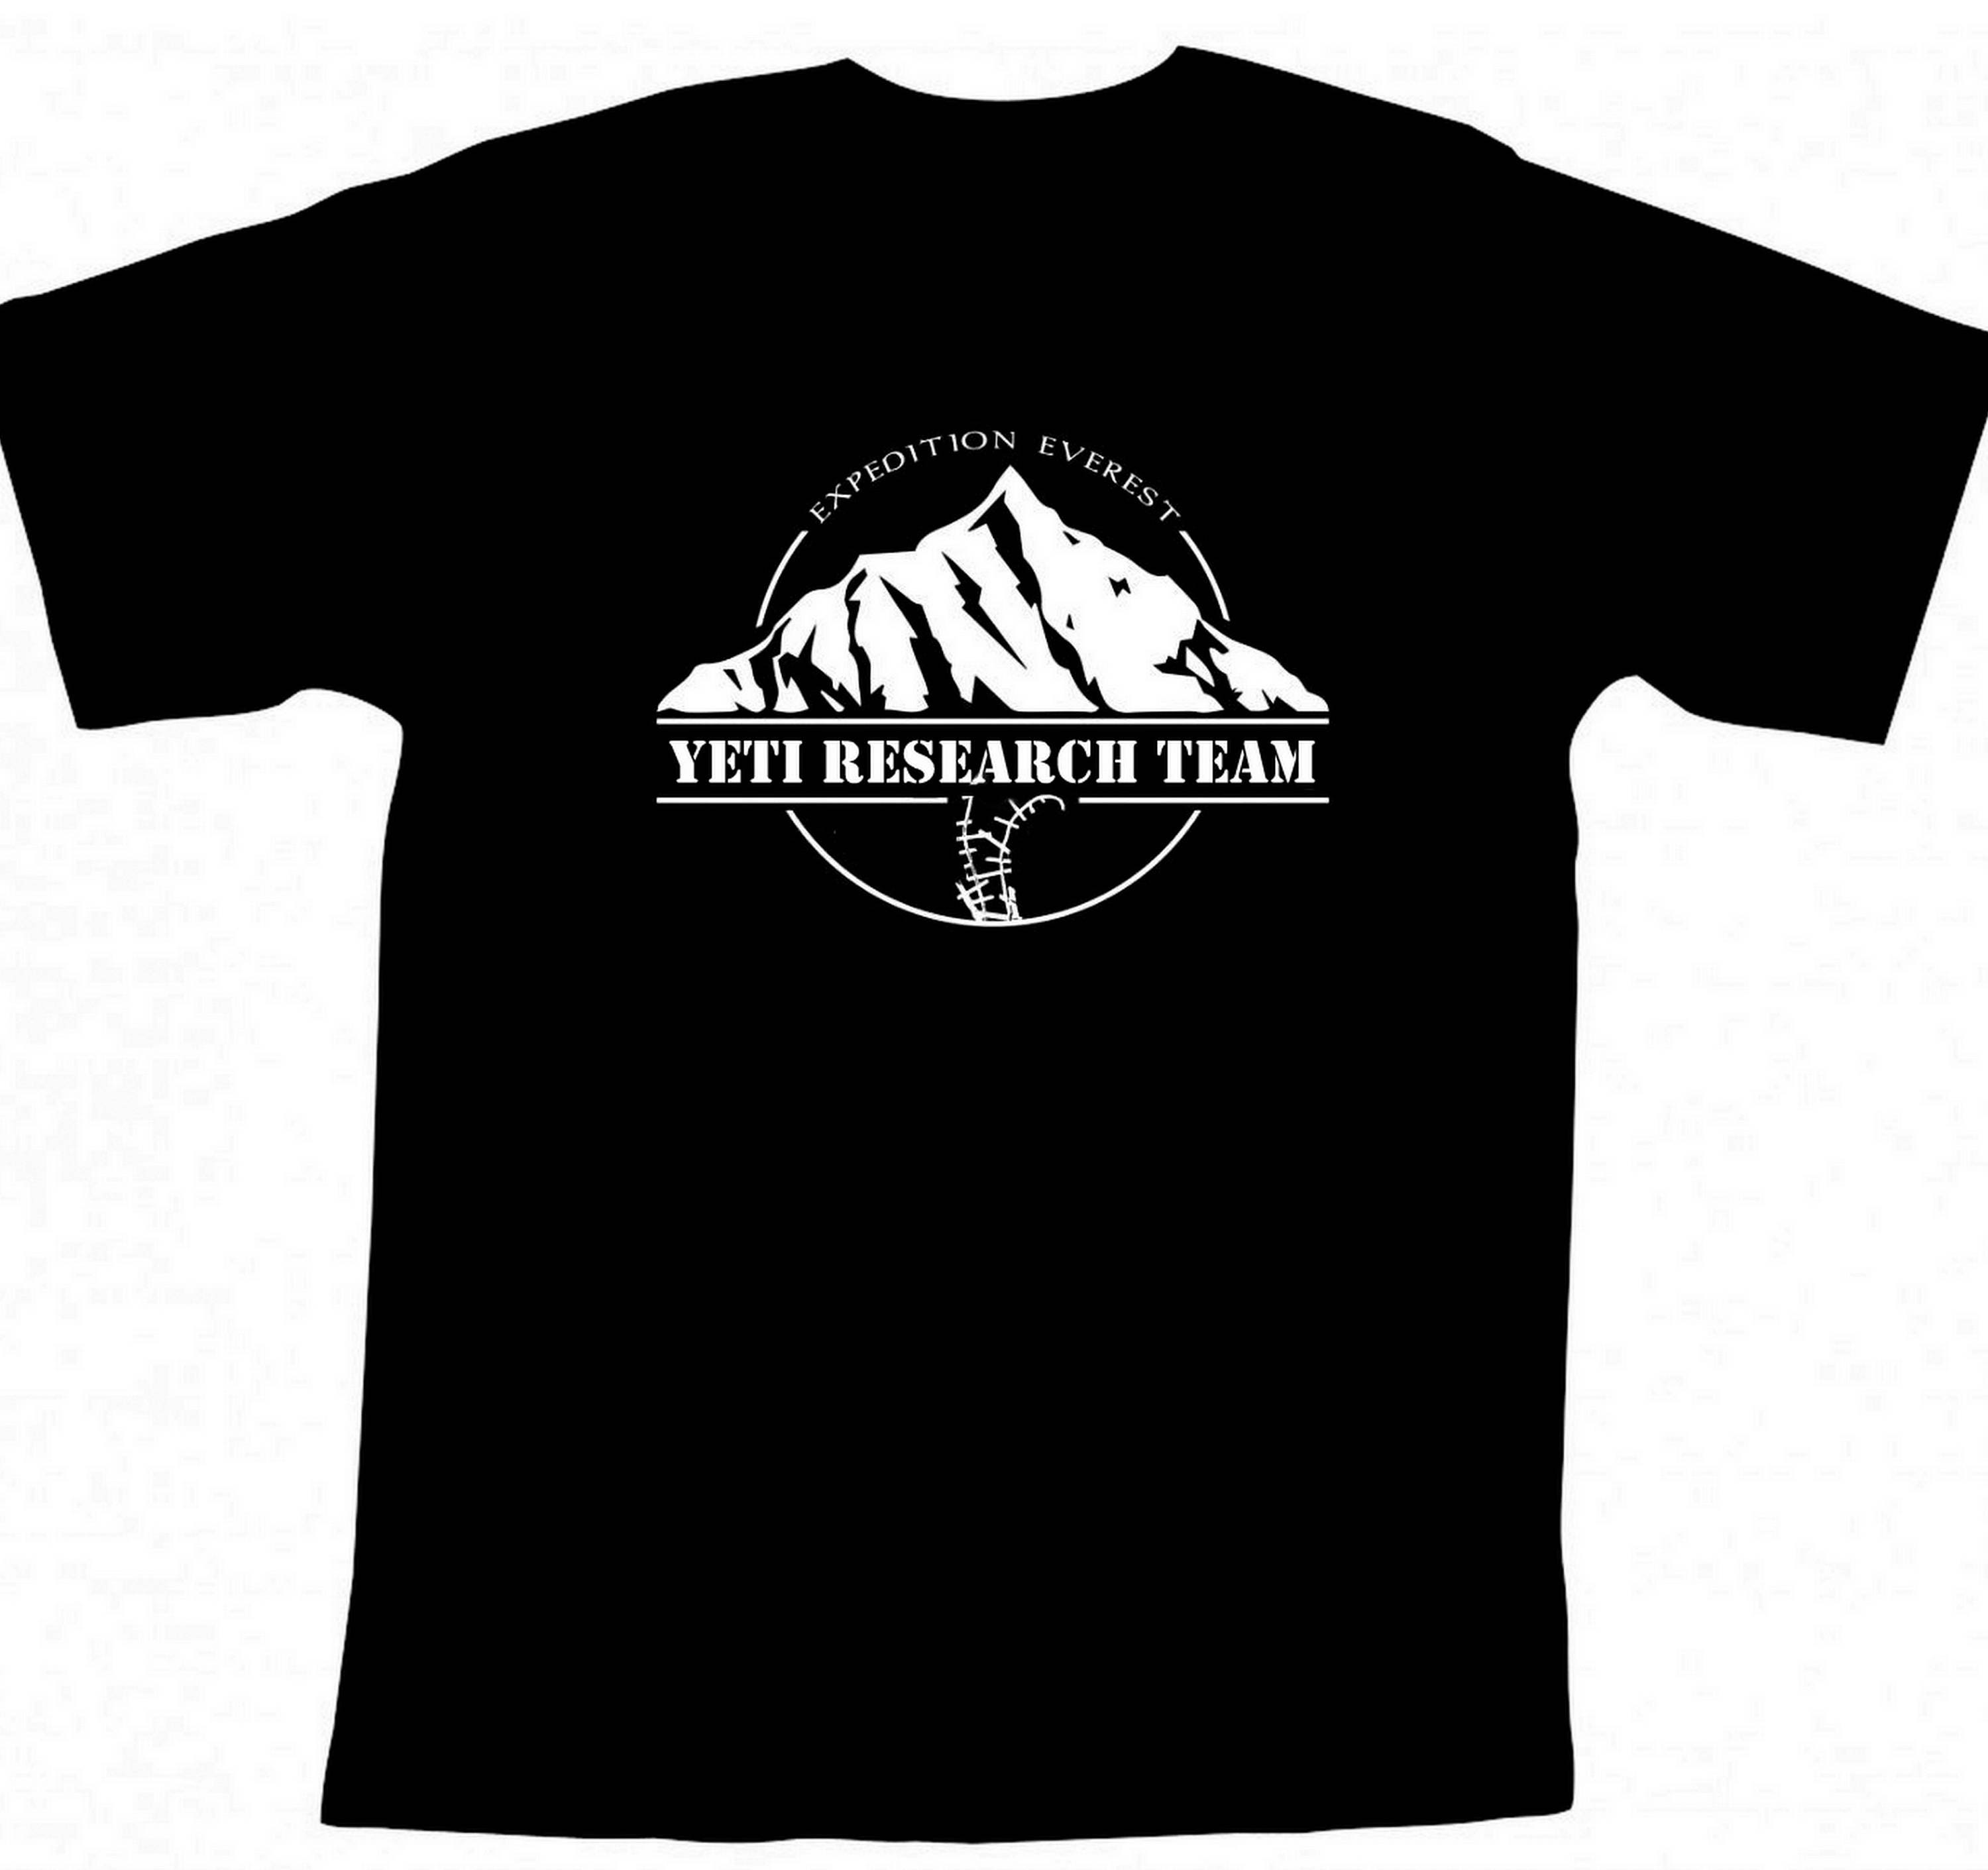 WDW - Expedition Everest T-shirt - Yeti Girl Yeti,Set,Go (Youth) —  USShoppingSOS